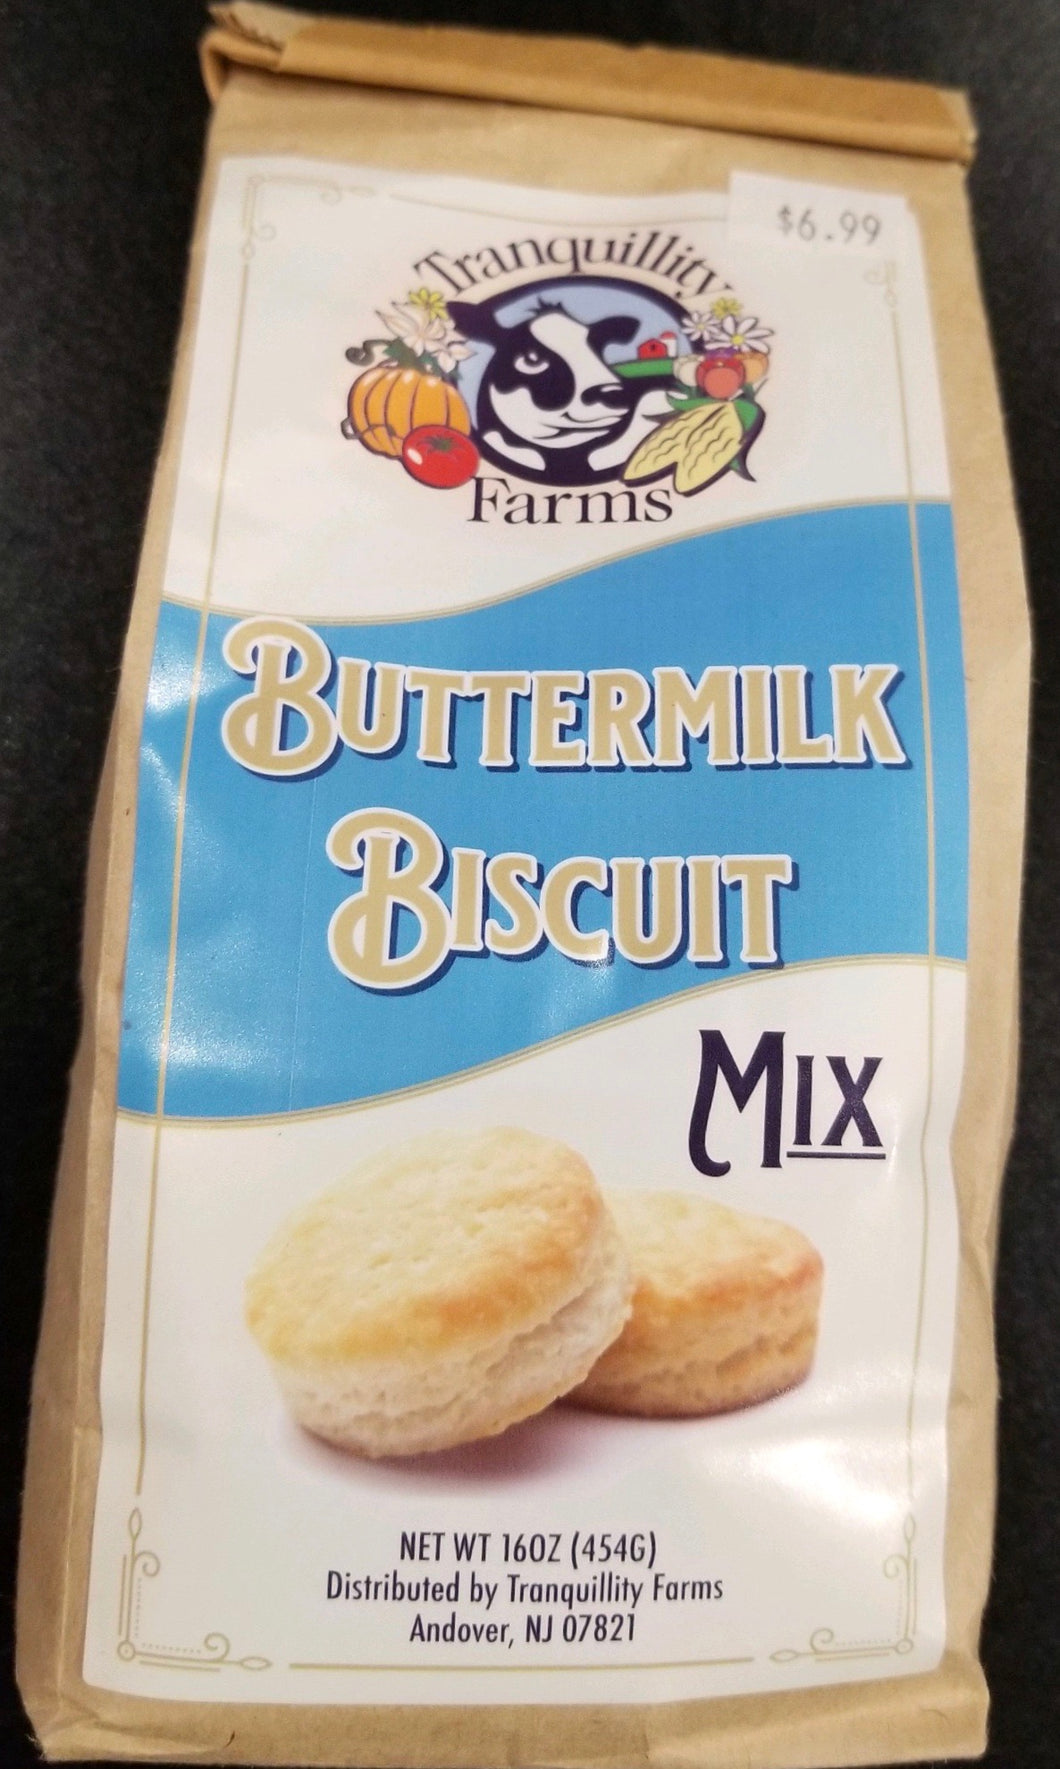 Buttermilk biscuit mix